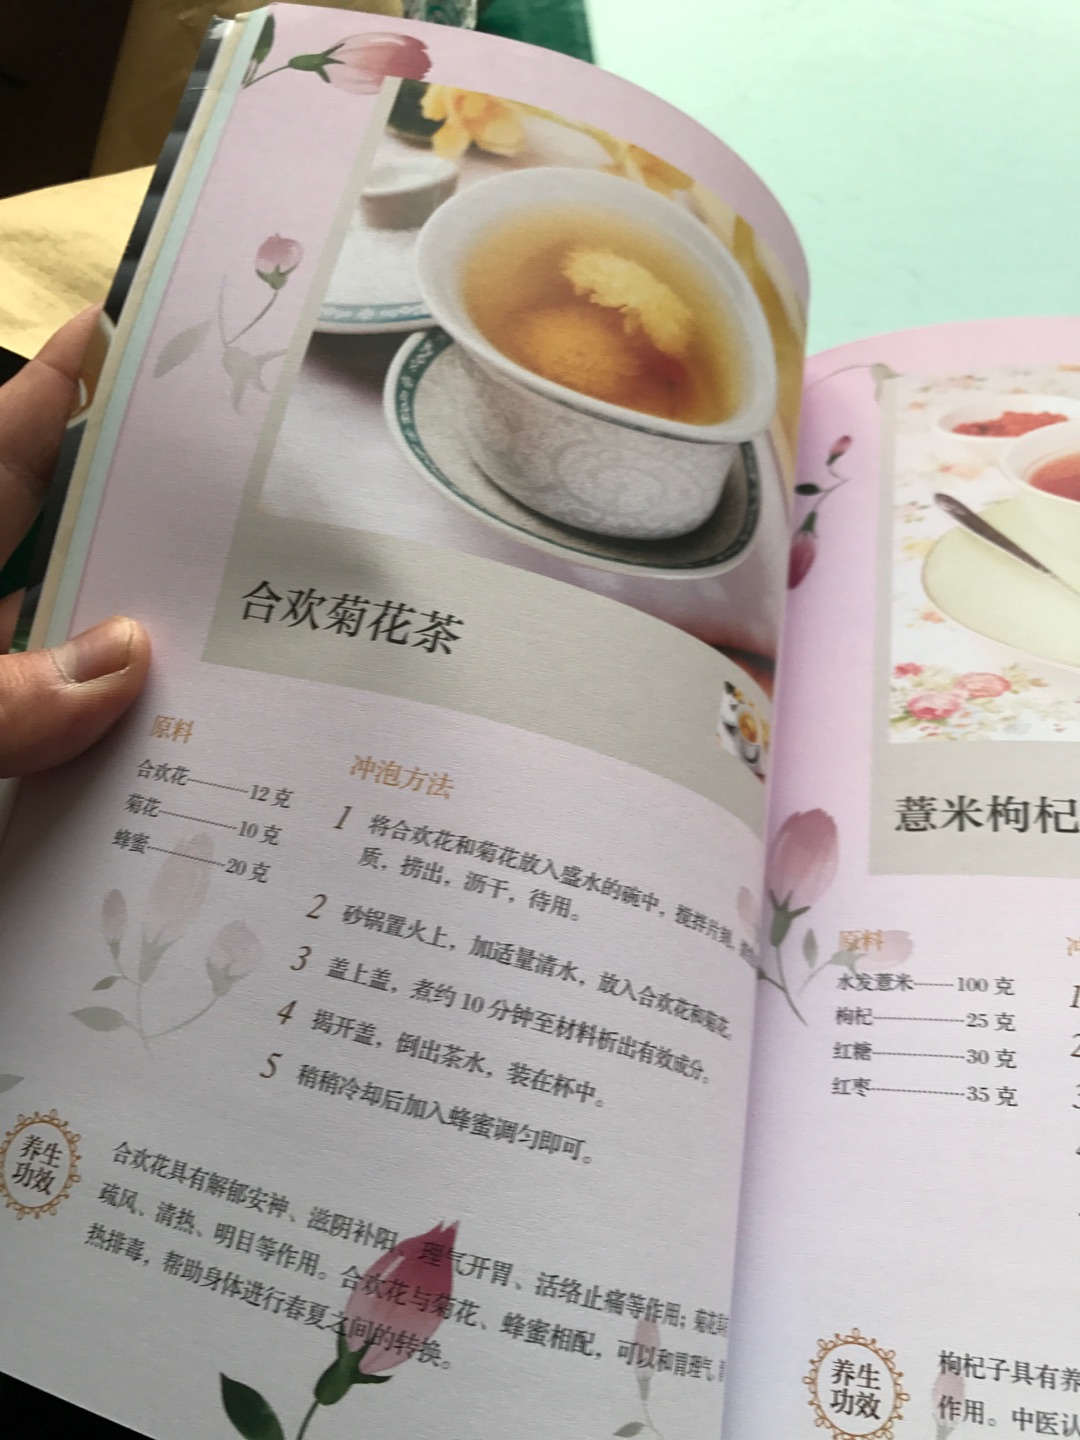 介绍怎么泡茶煮茶，图文并茂，就是书来的时候没有塑封，其他都挺好的